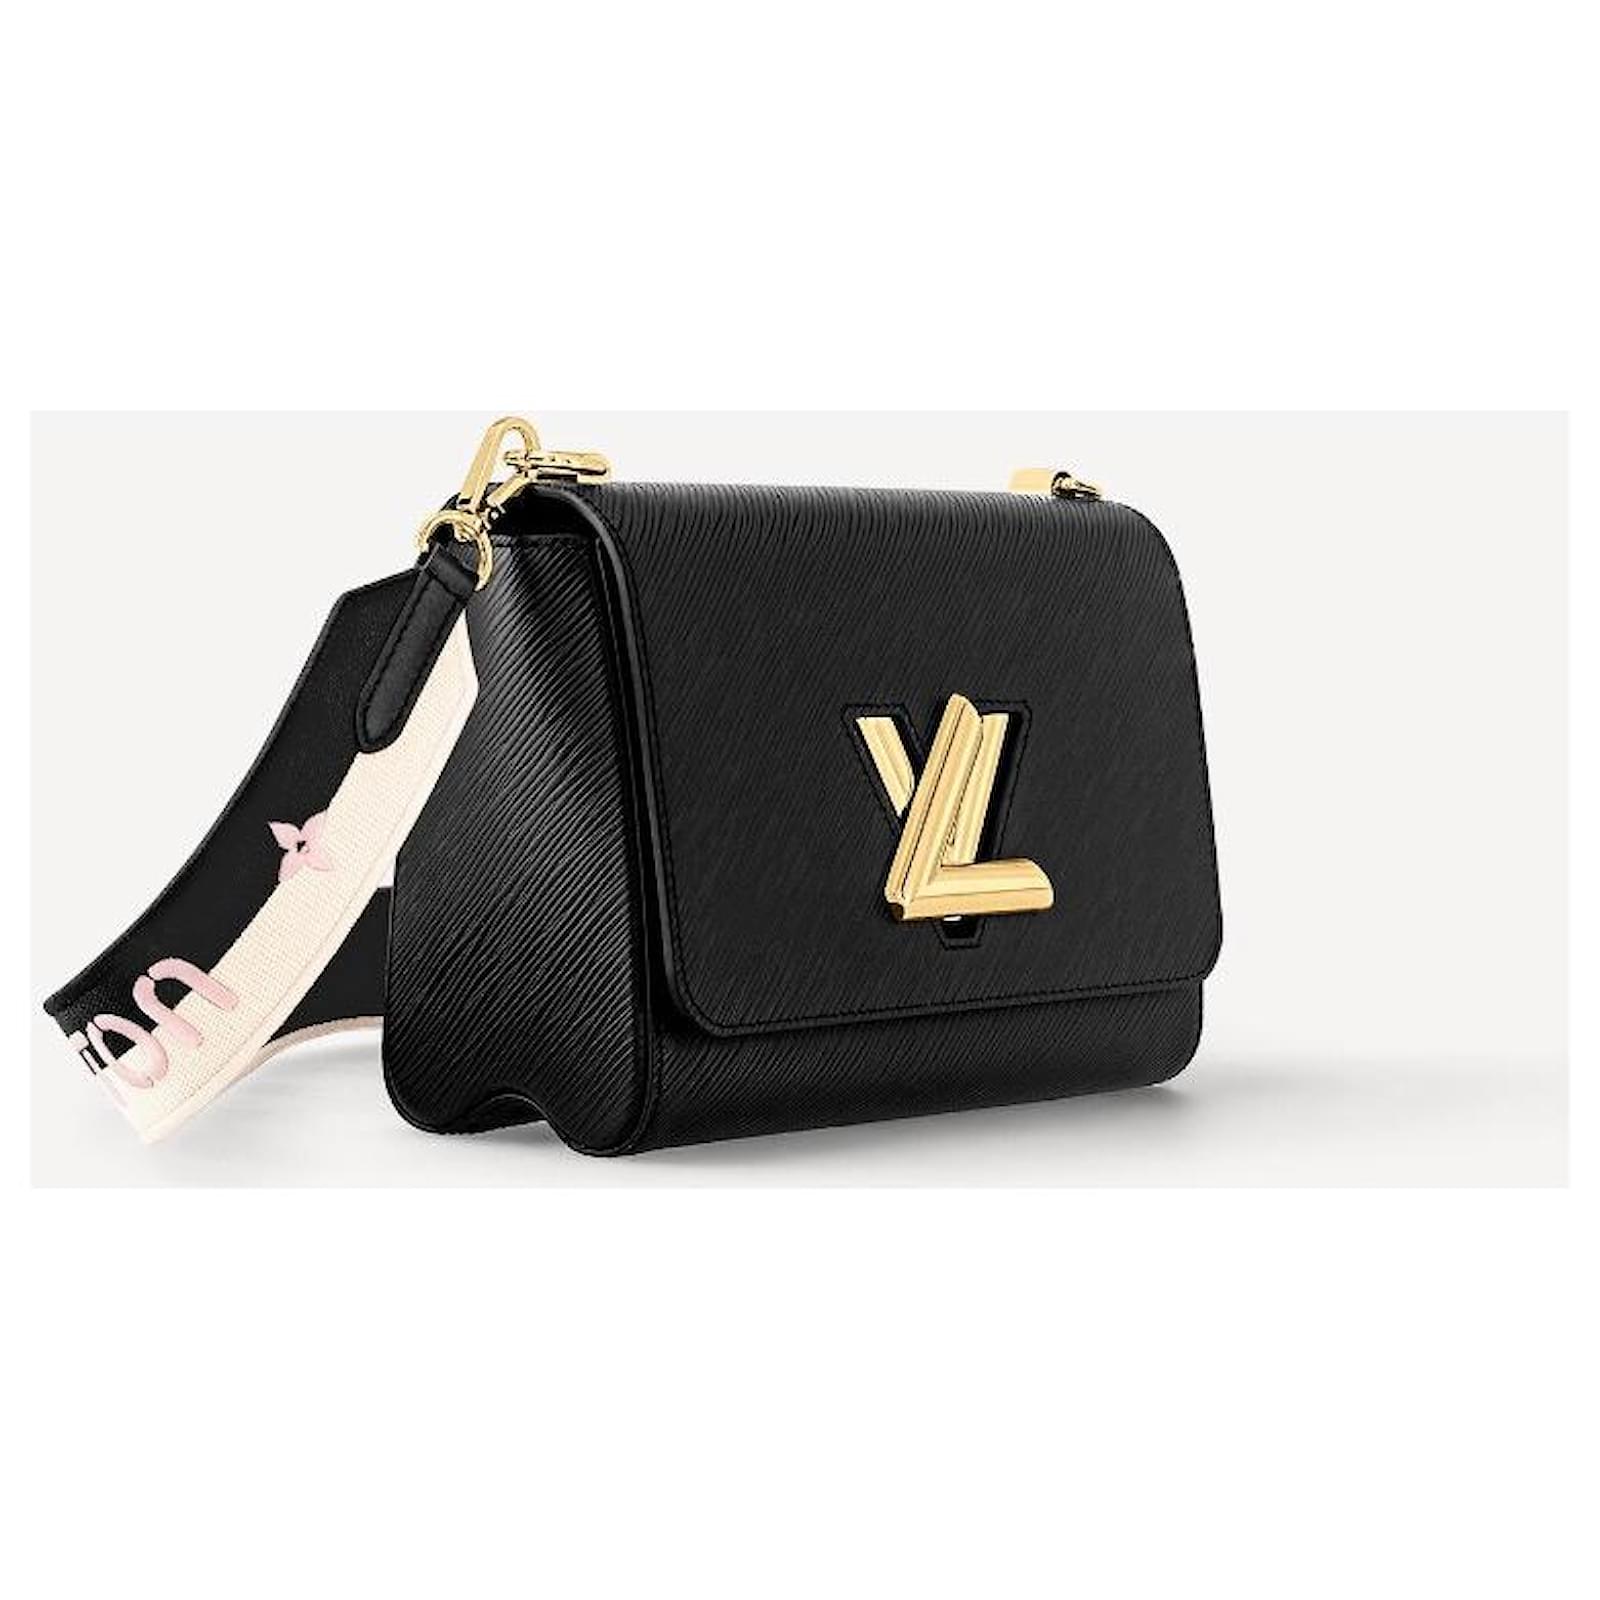 Shopsell - Bolsa Louis Vuitton en piel Epi negra, interiores en